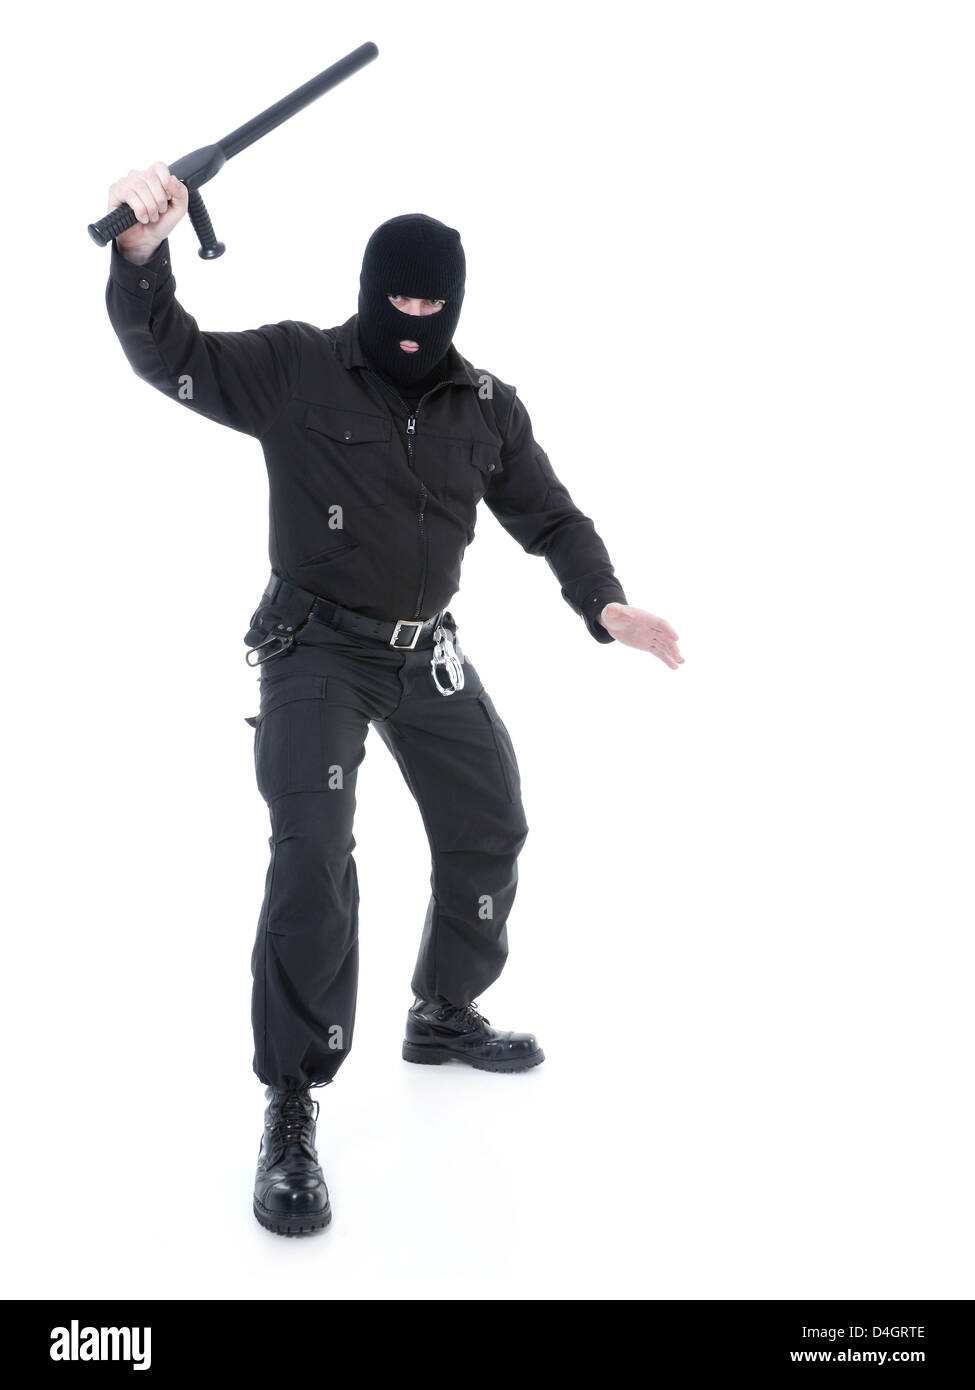 La police anti-terroriste mec uniforme noir et black mask holding police club fermement dans une main posée dans l'air Banque D'Images